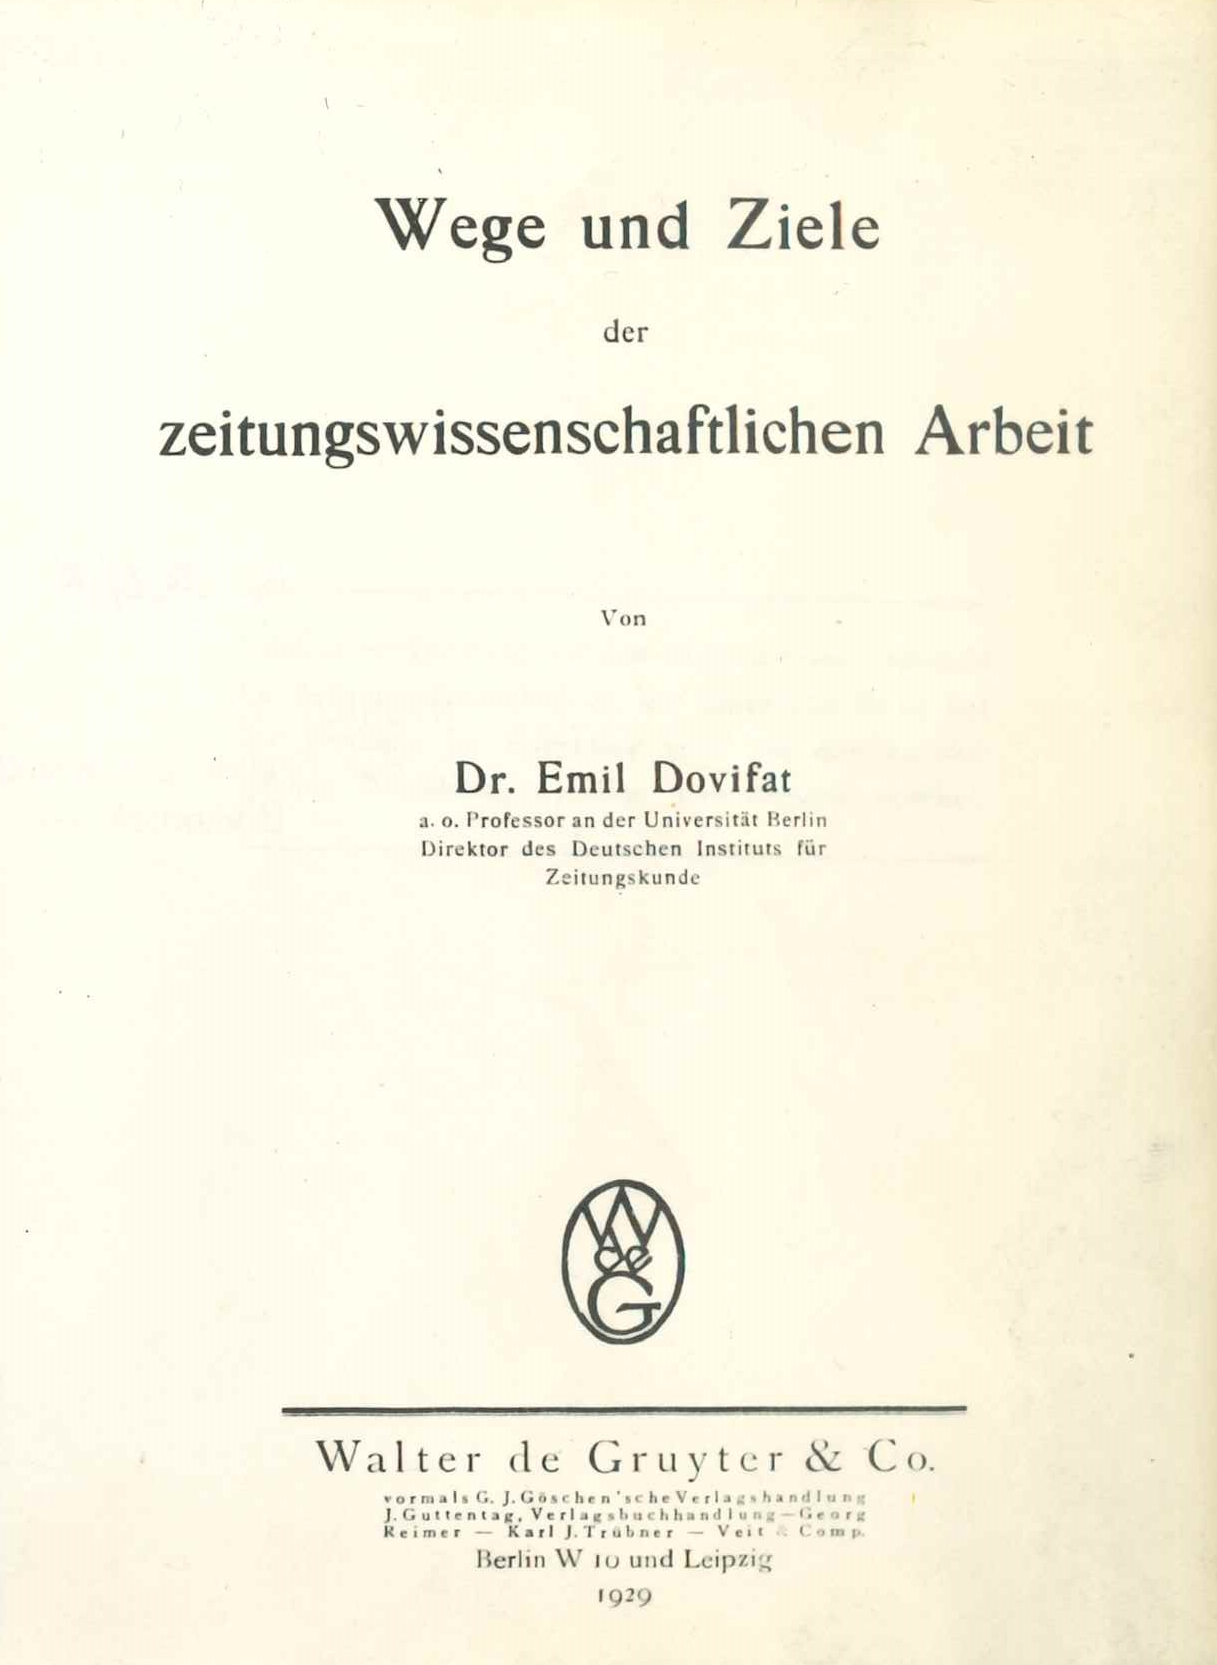 Dovifat, E. (1929). Wege und Ziele der zeitungswissenschaftlichen Arbeit. Walter de Gruyter & Co.